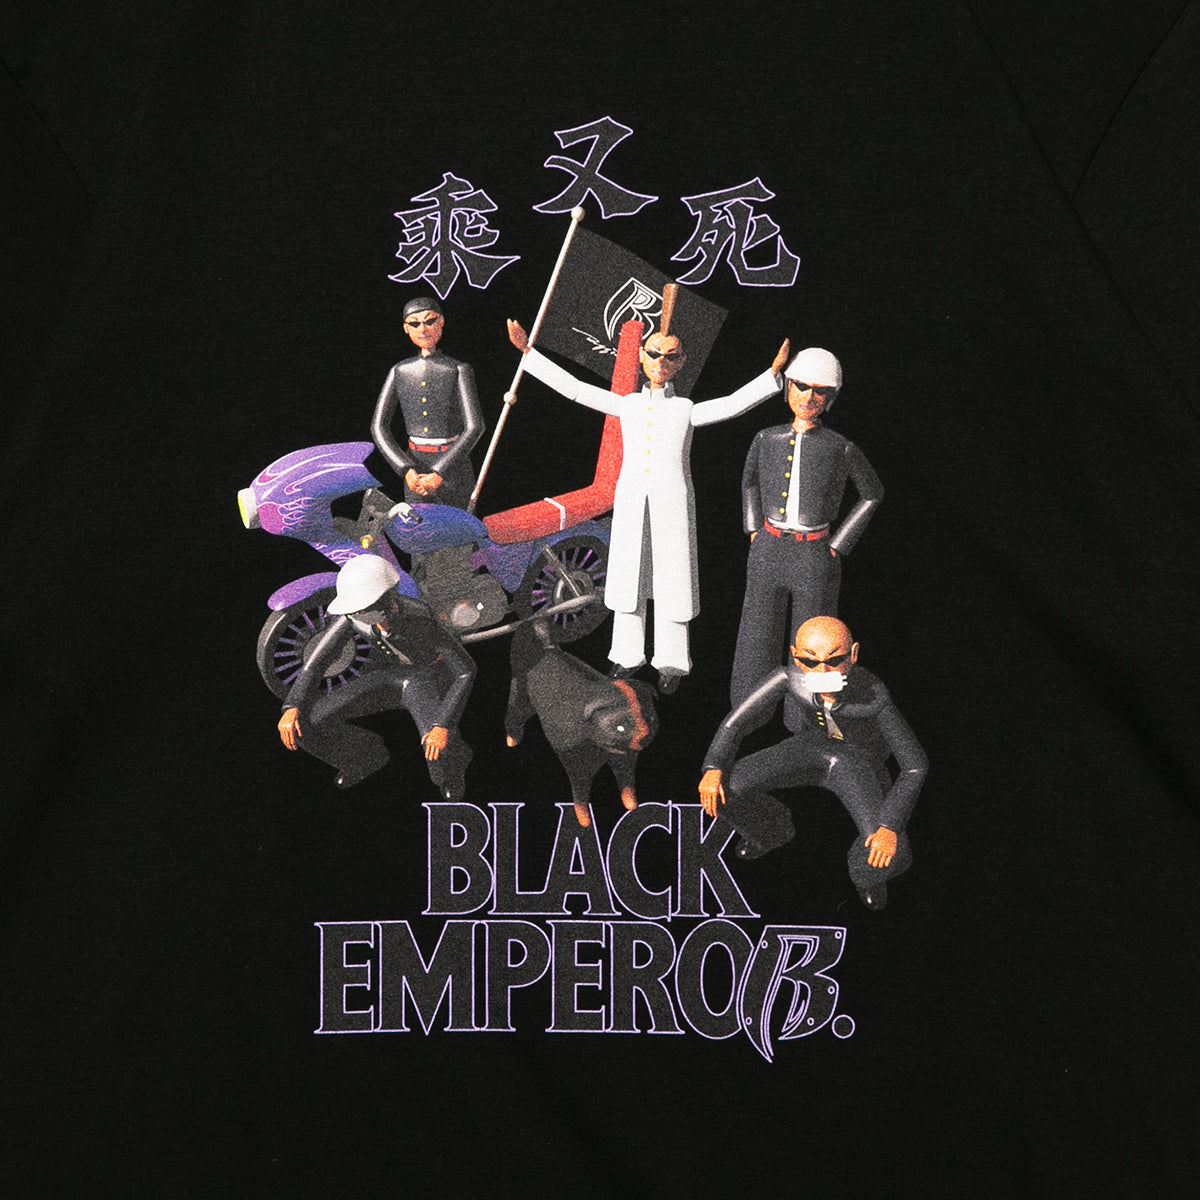 Black Emperor Tee-Black